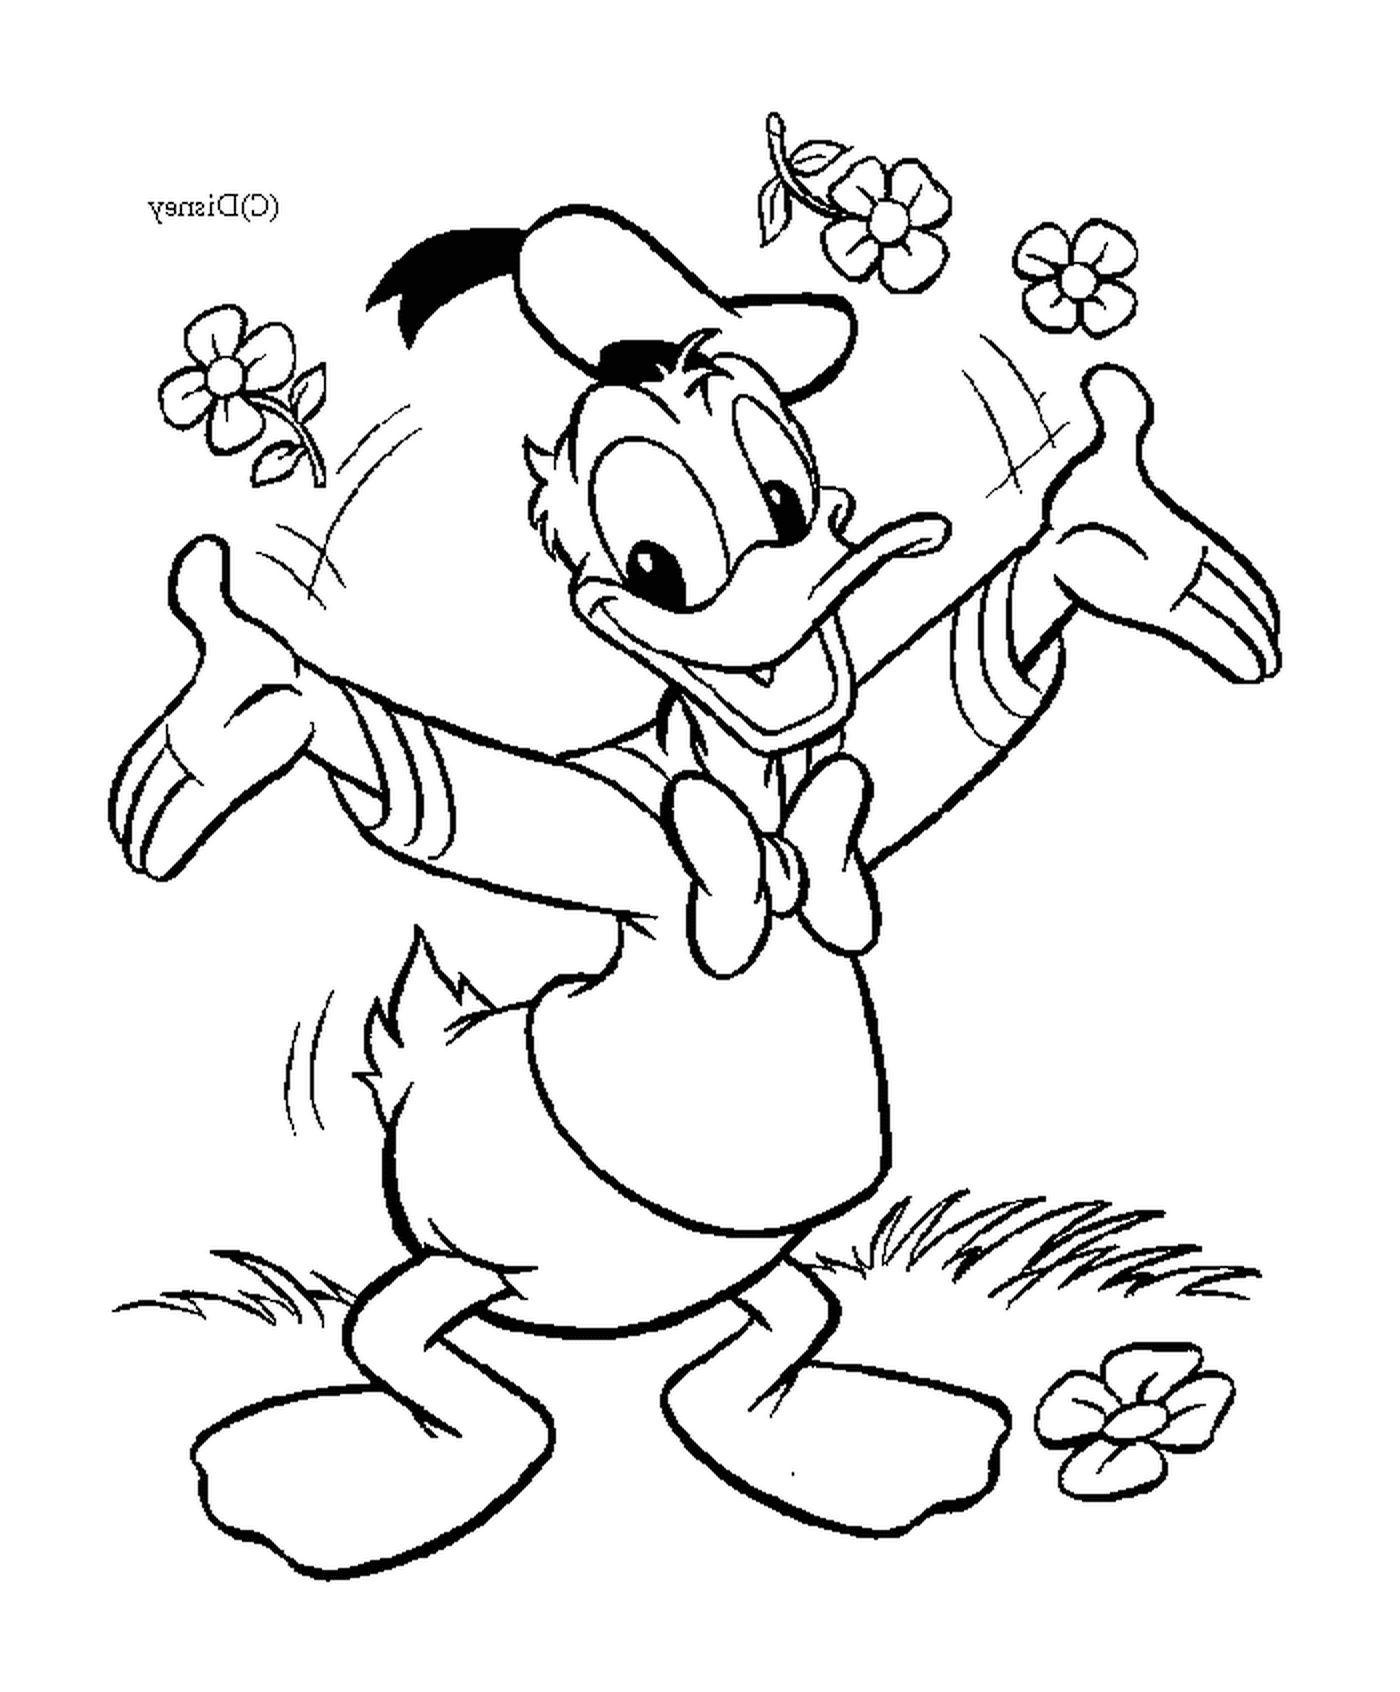  Donald ofrece flores con afecto 